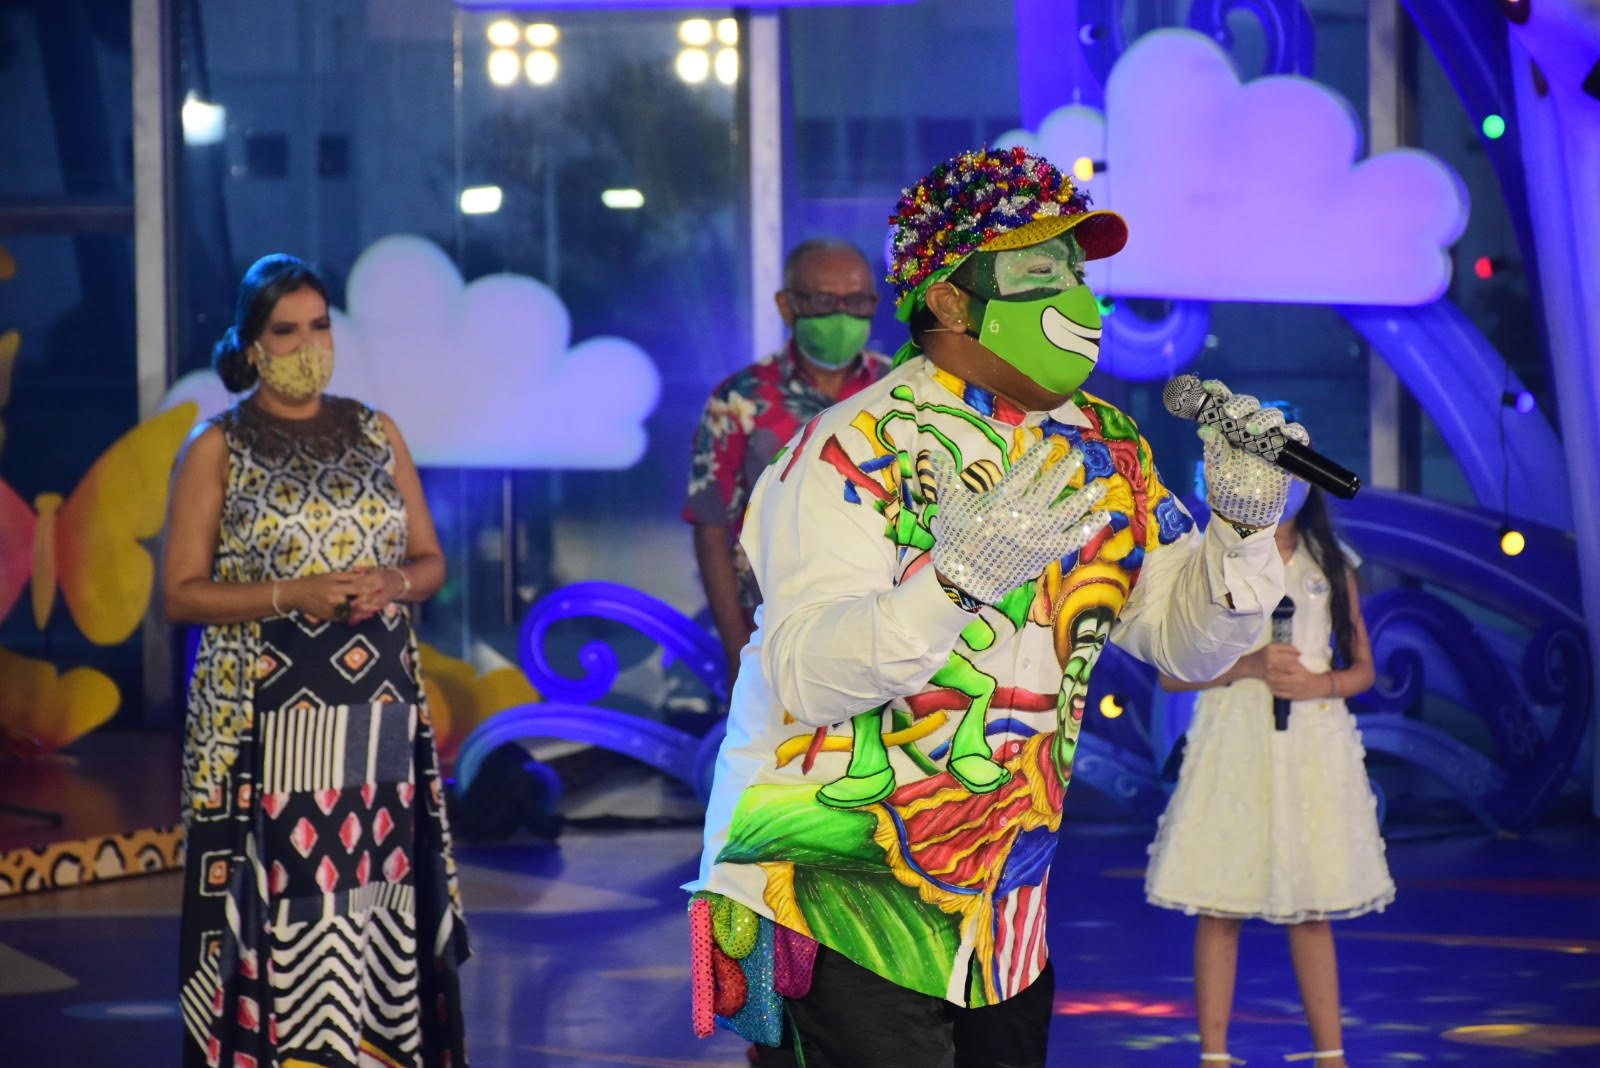 El 'Paco paco' del Carnaval en el homenaje al Festival del millo